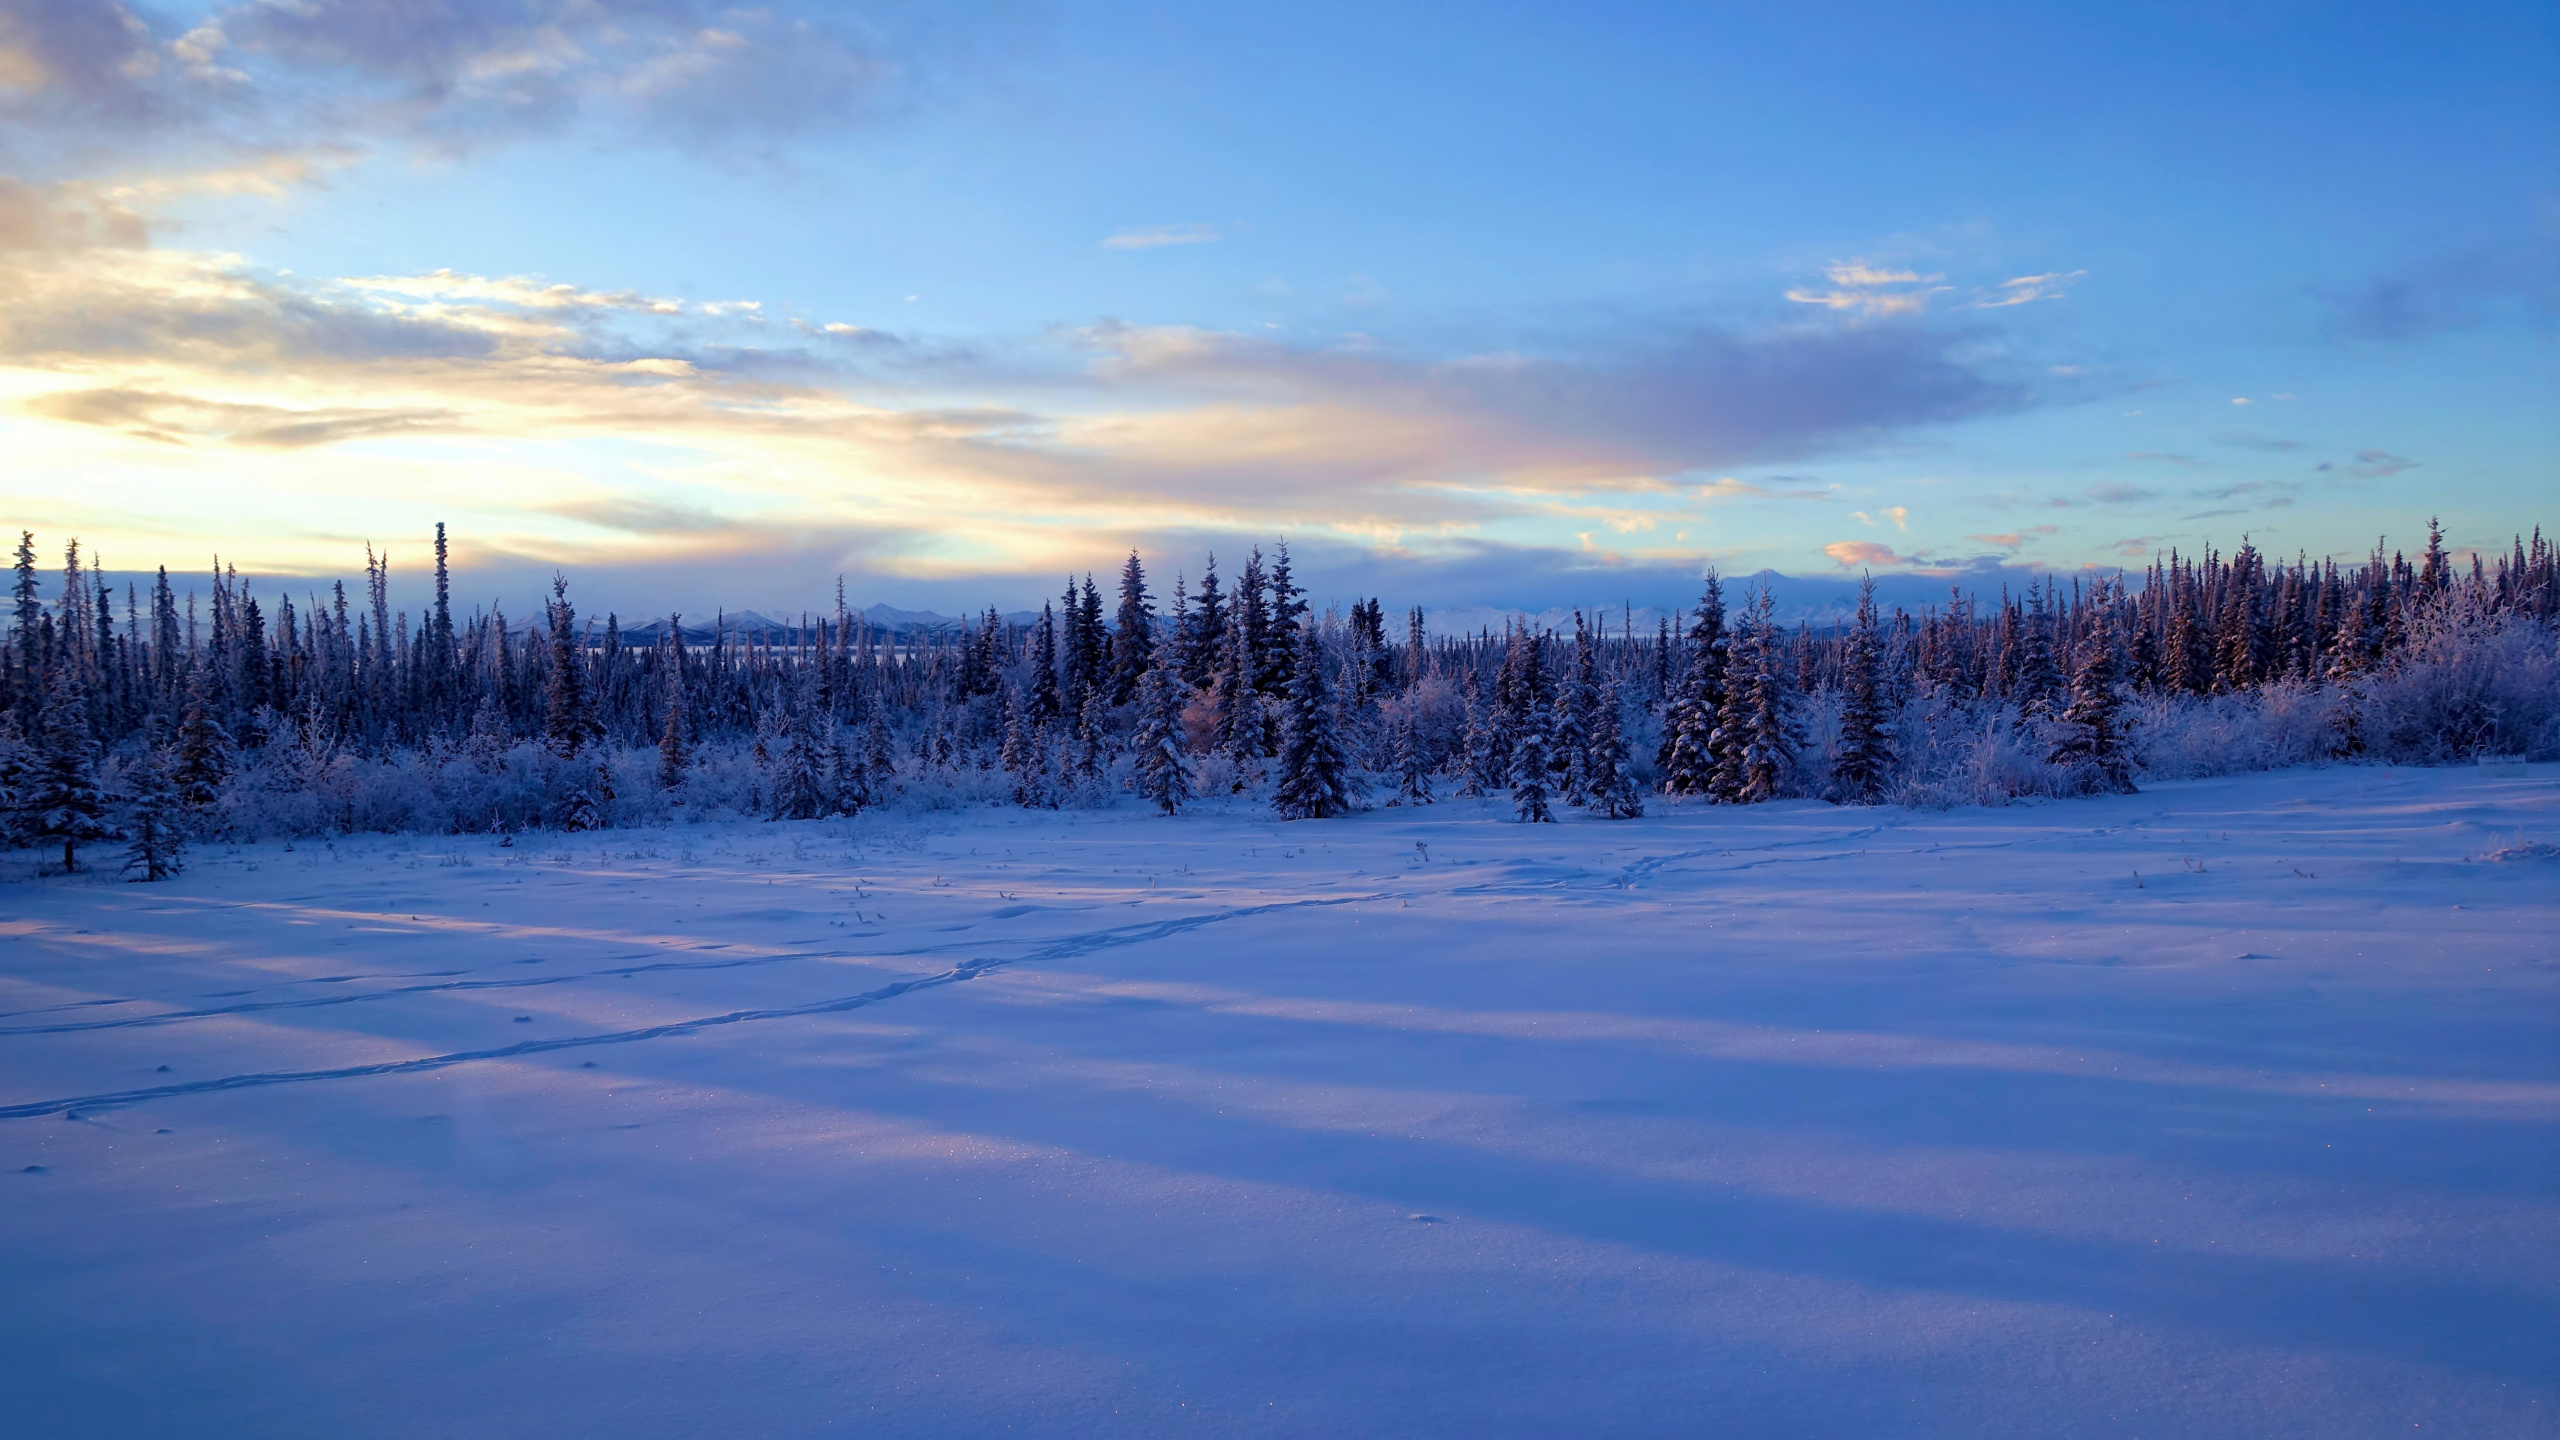 阿拉斯加, 冬天, 冻结, 荒野, 云杉 壁纸 2560x1440 允许